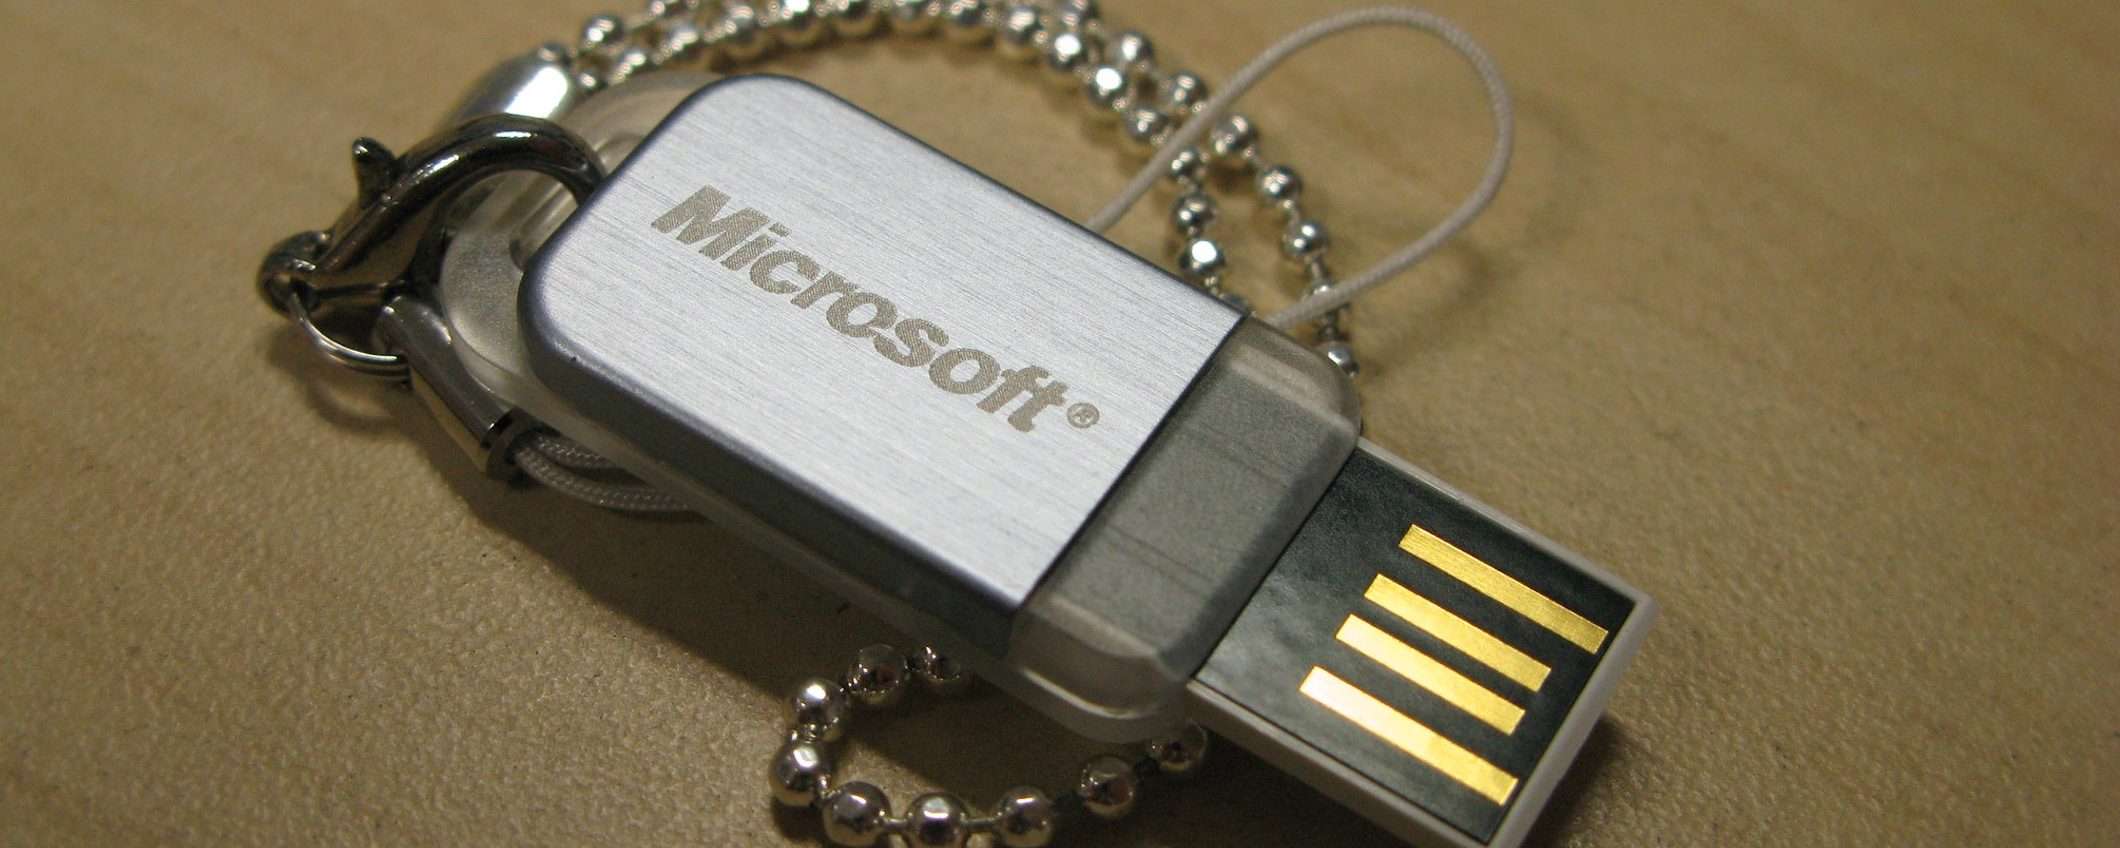 Microsoft sta regalando chiavette USB agli utenti